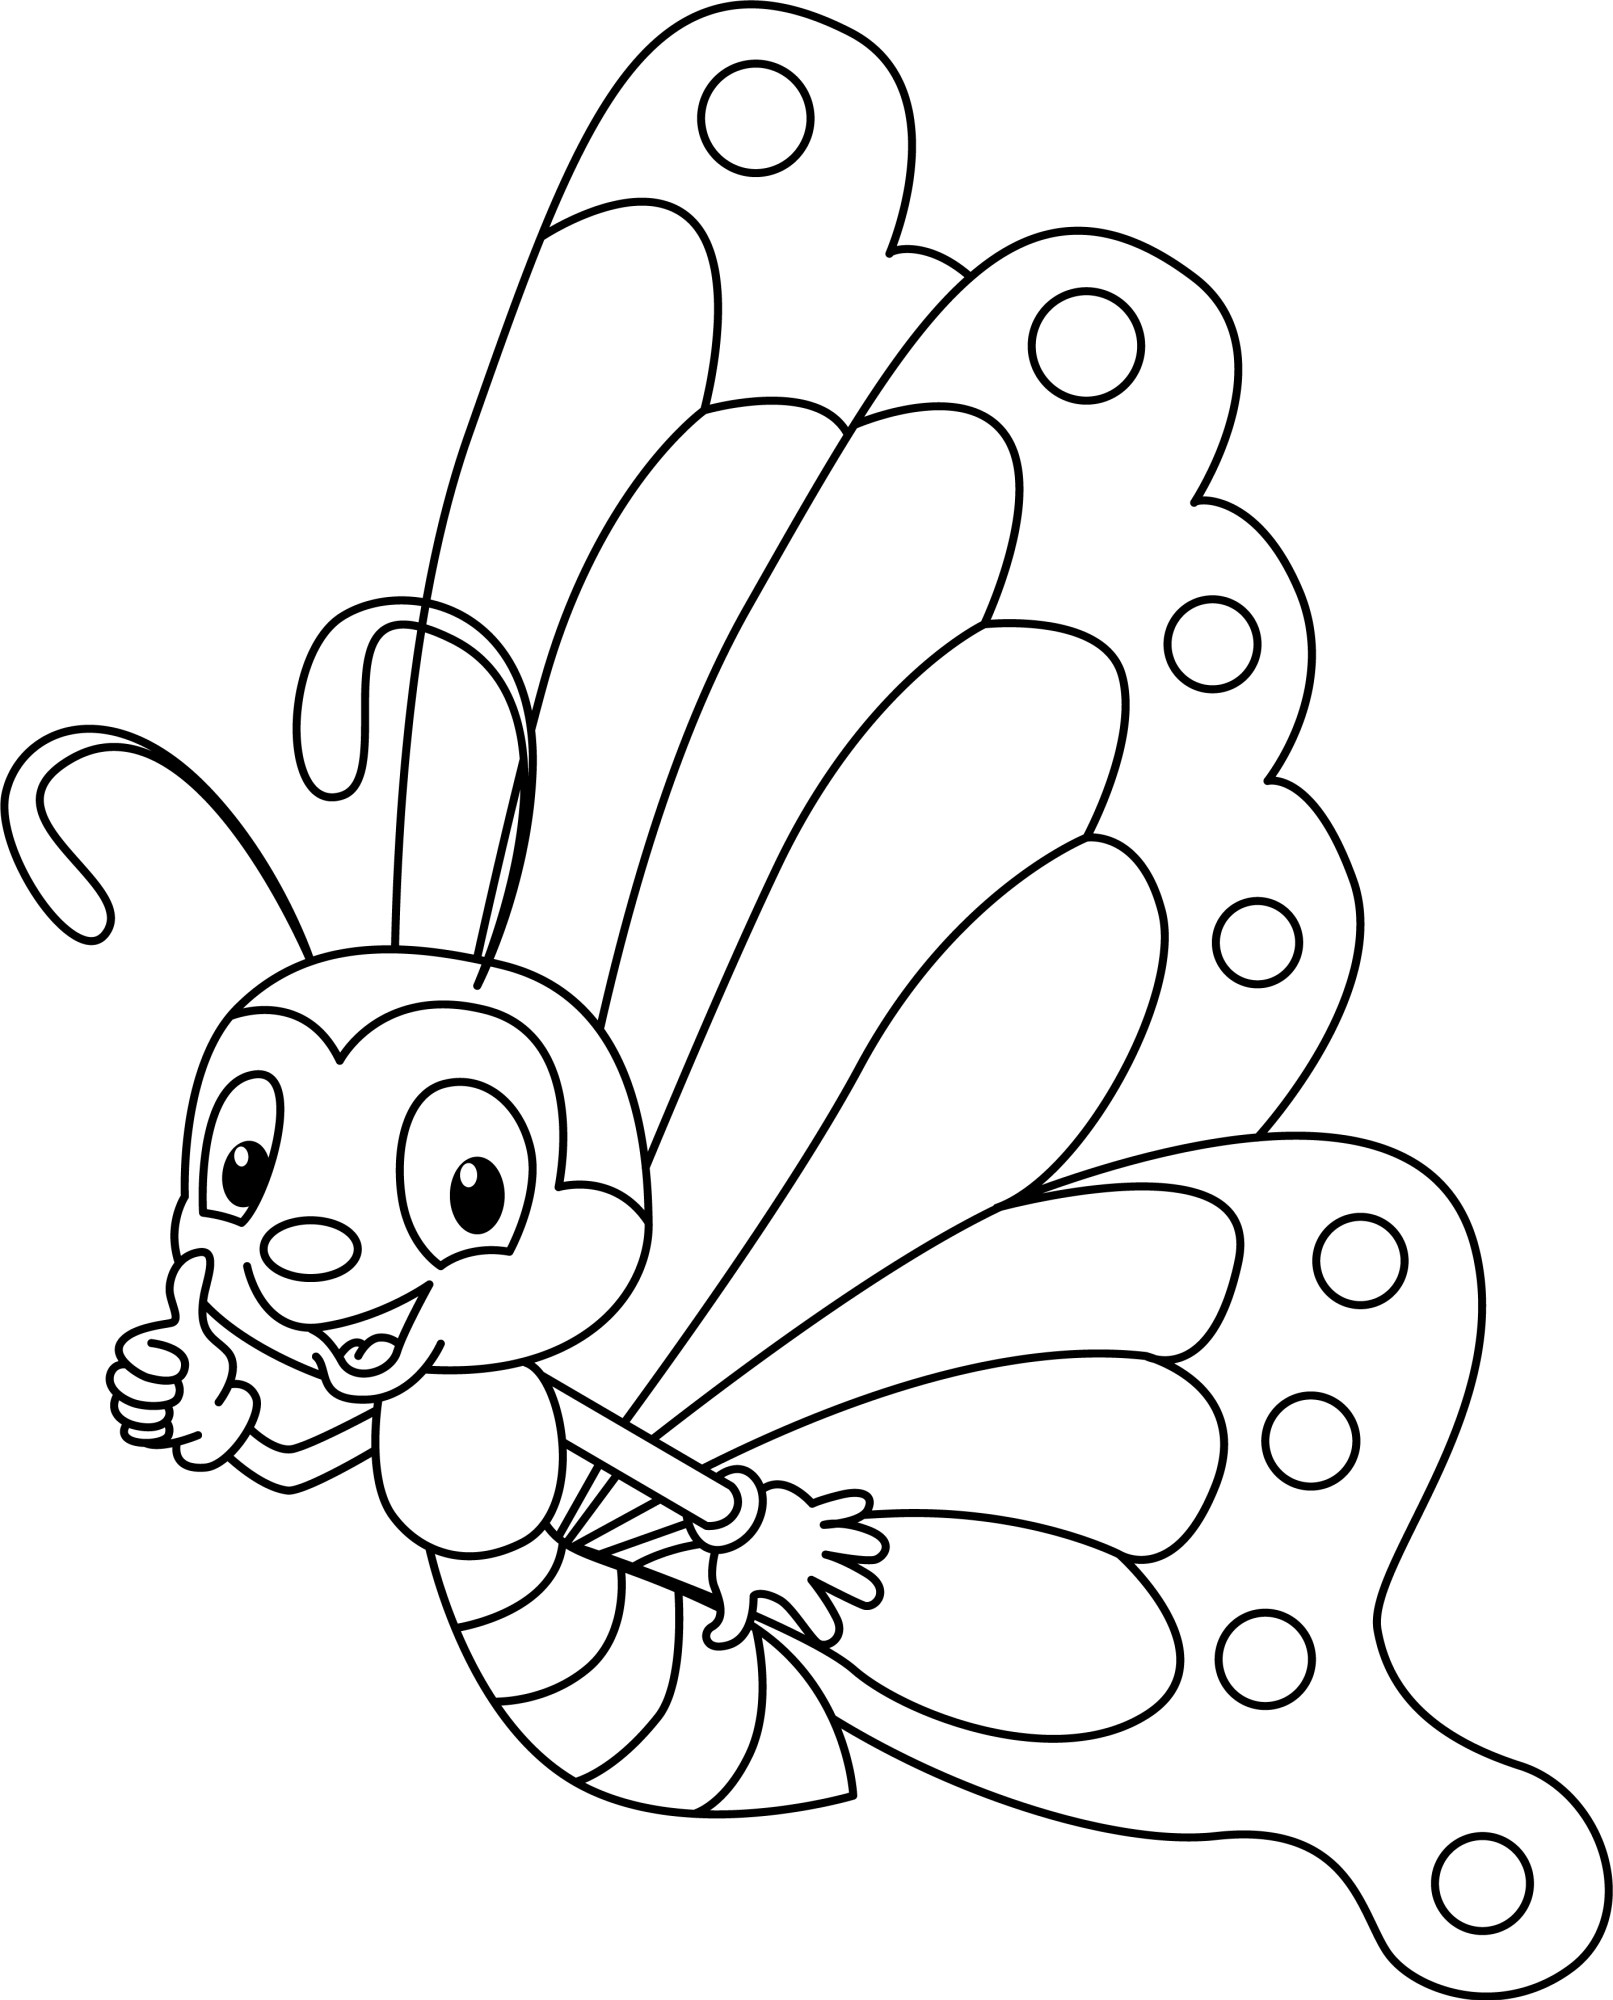 Раскраска для детей: бабочка показывает большой палец